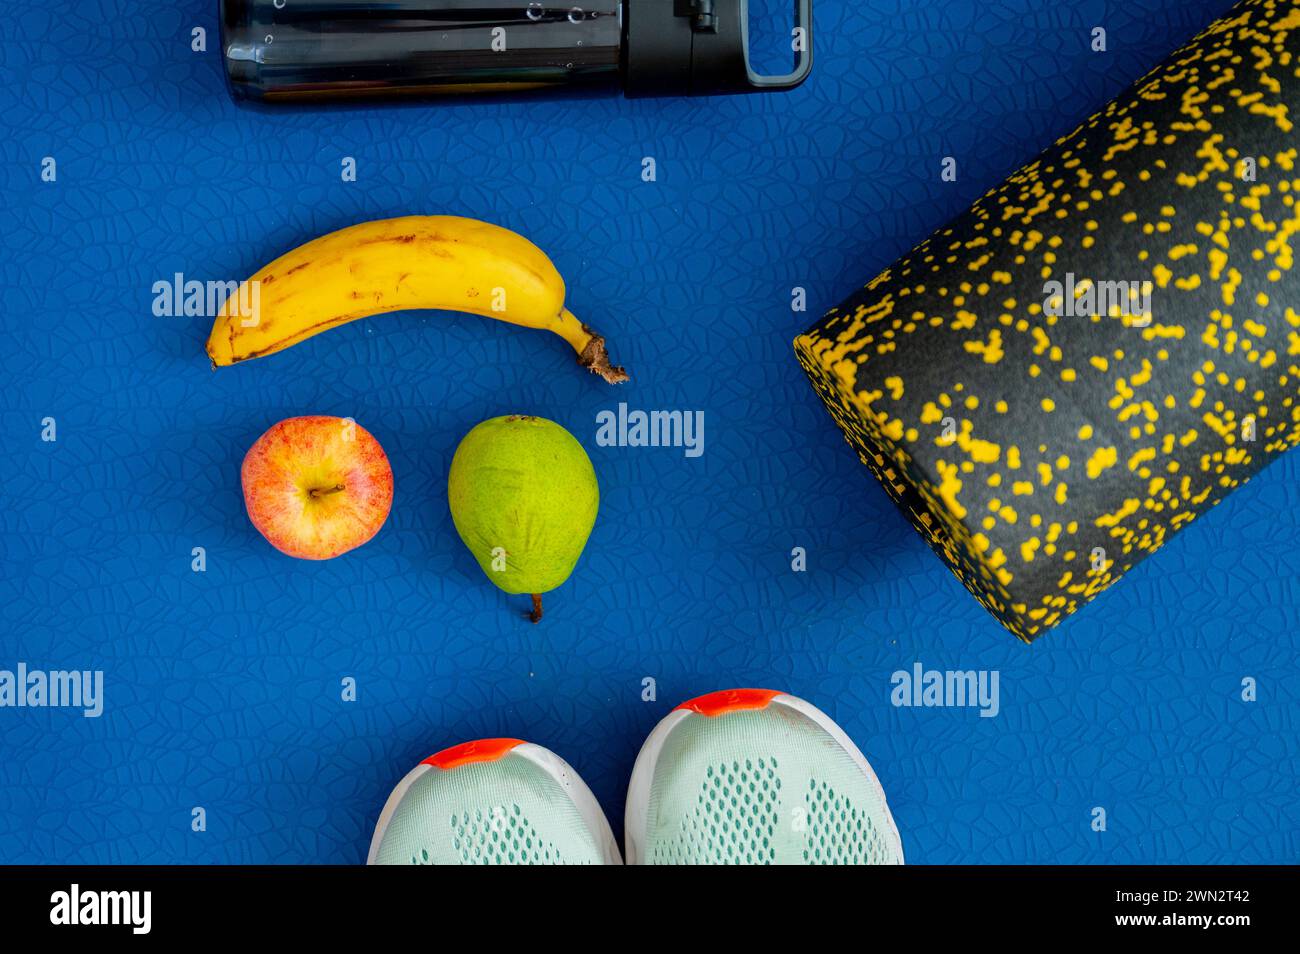 Bananen, Apfel, Birnen und Trainingsgeräte auf der Matte. Auftanken von Energie während des Trainings oder Workouts Stockfoto